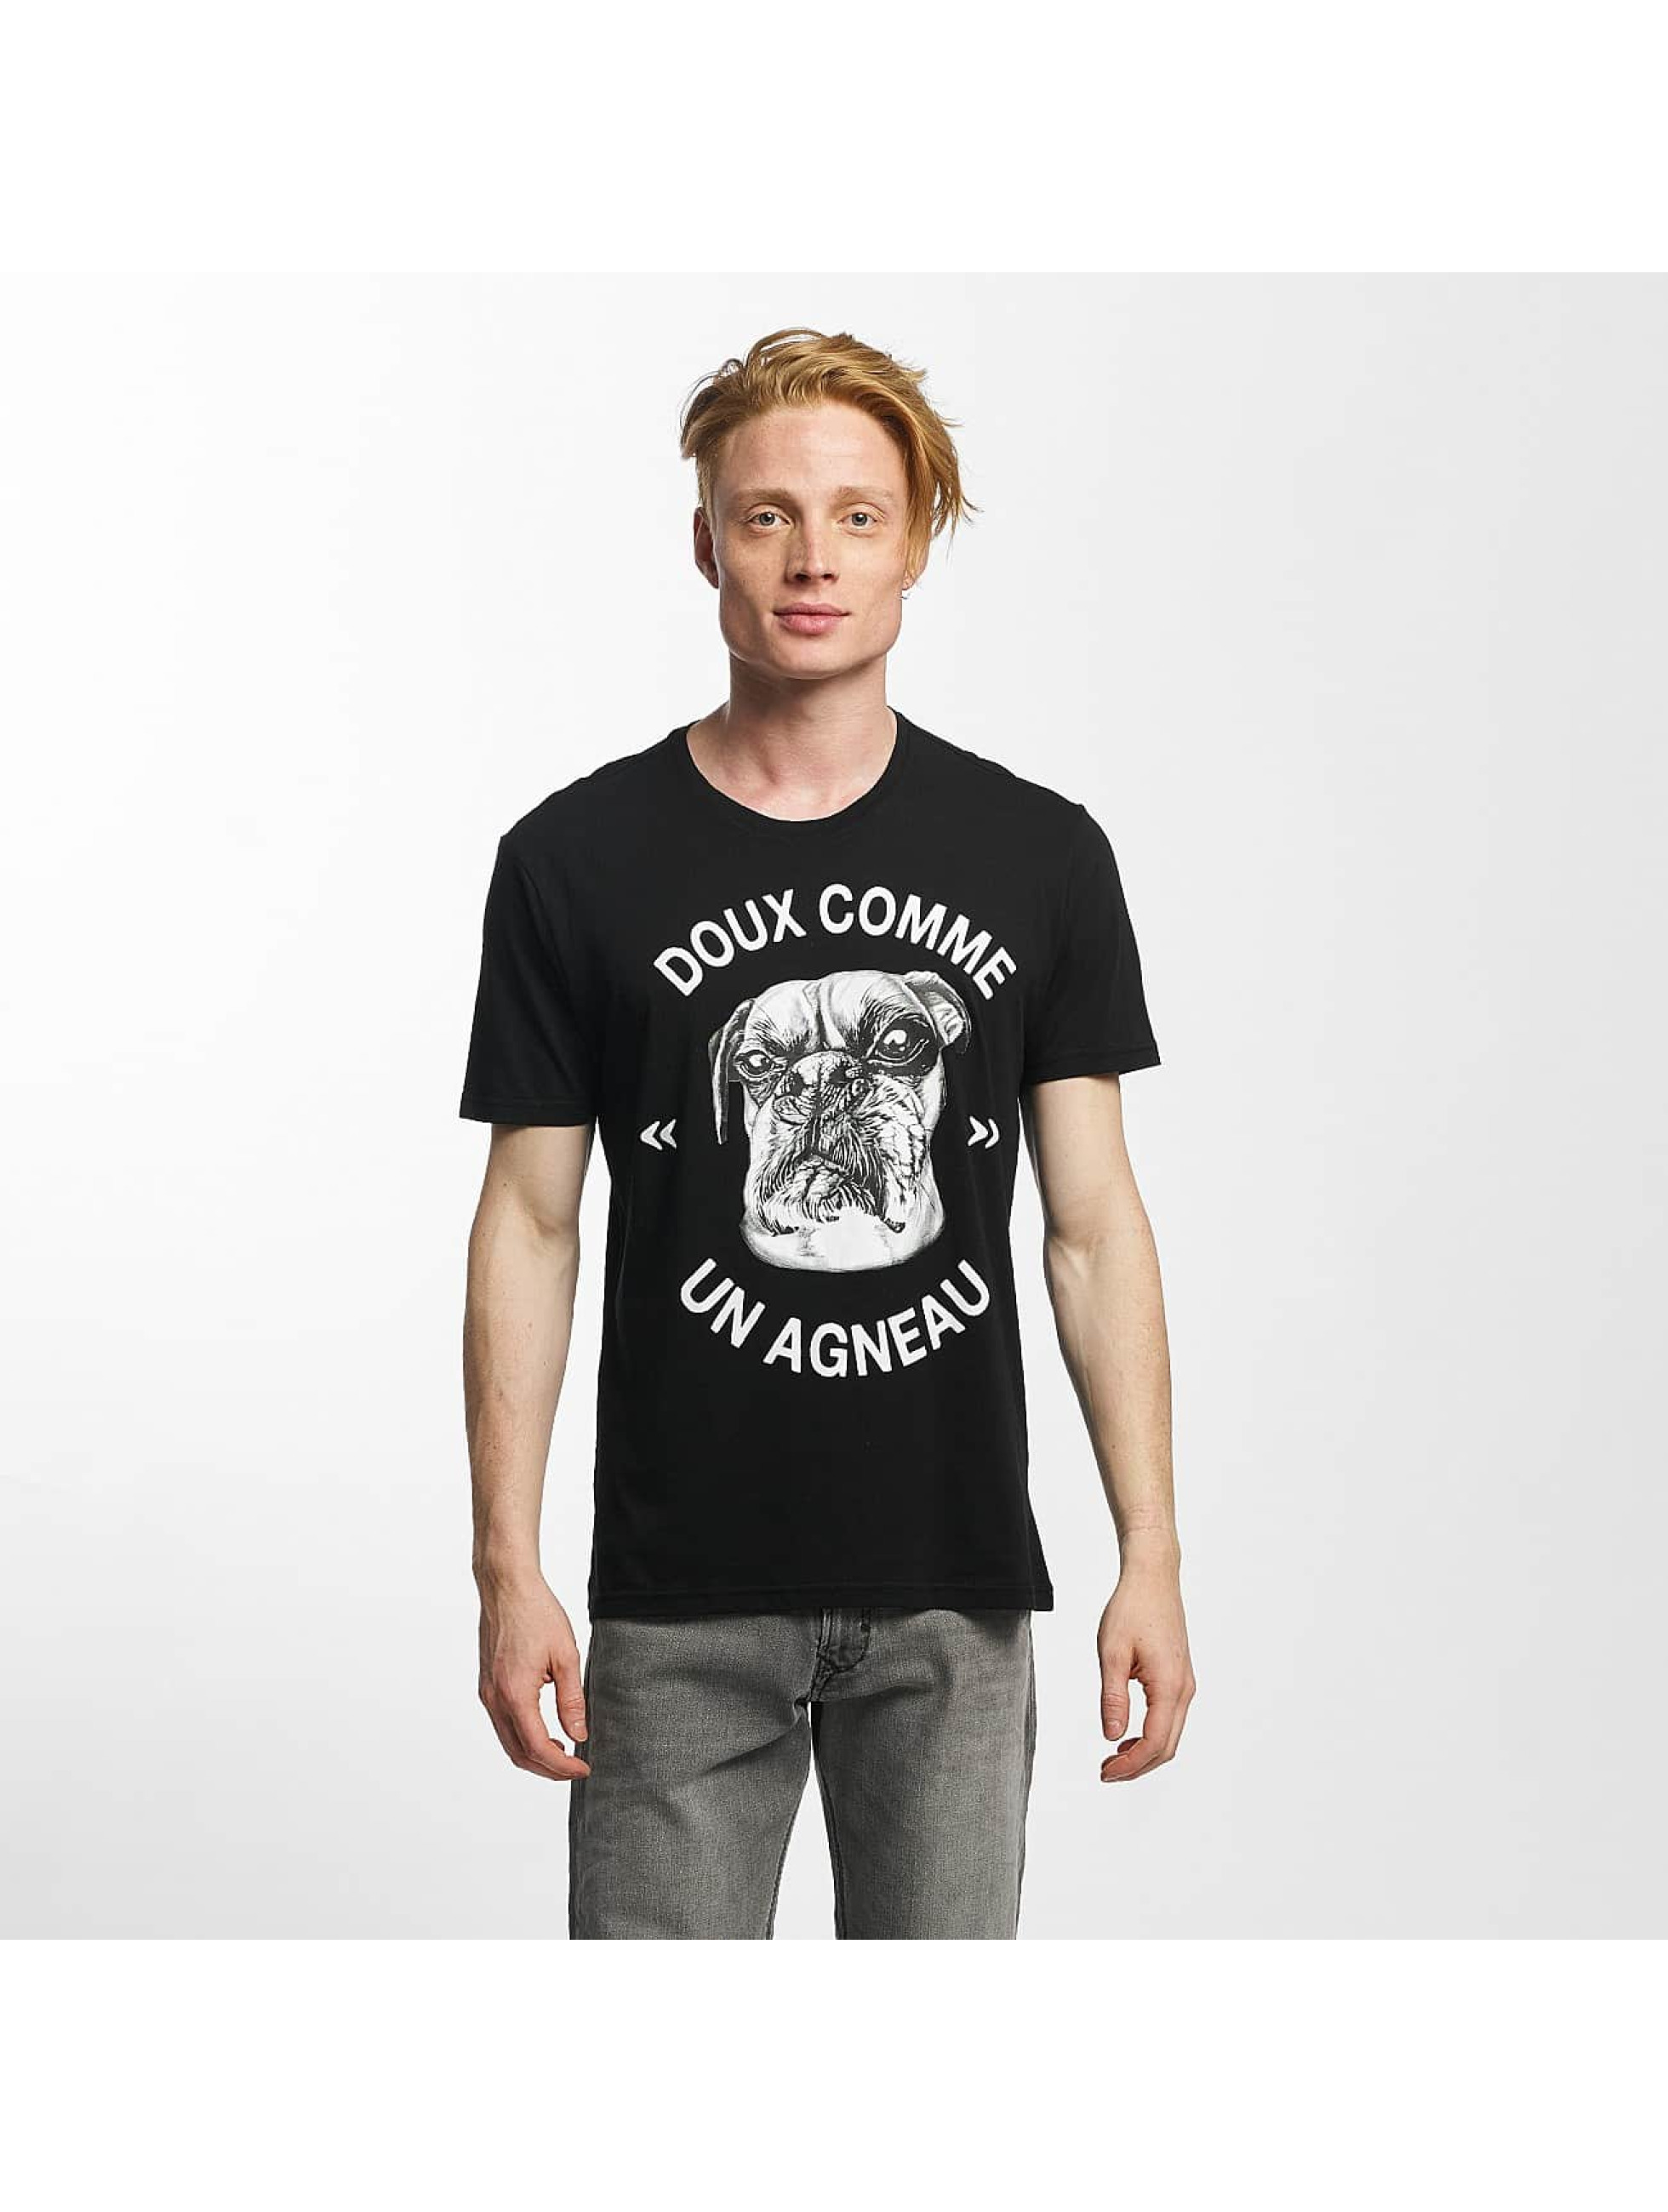 Kaporal Coeur D'Artichaut noir T-Shirt homme